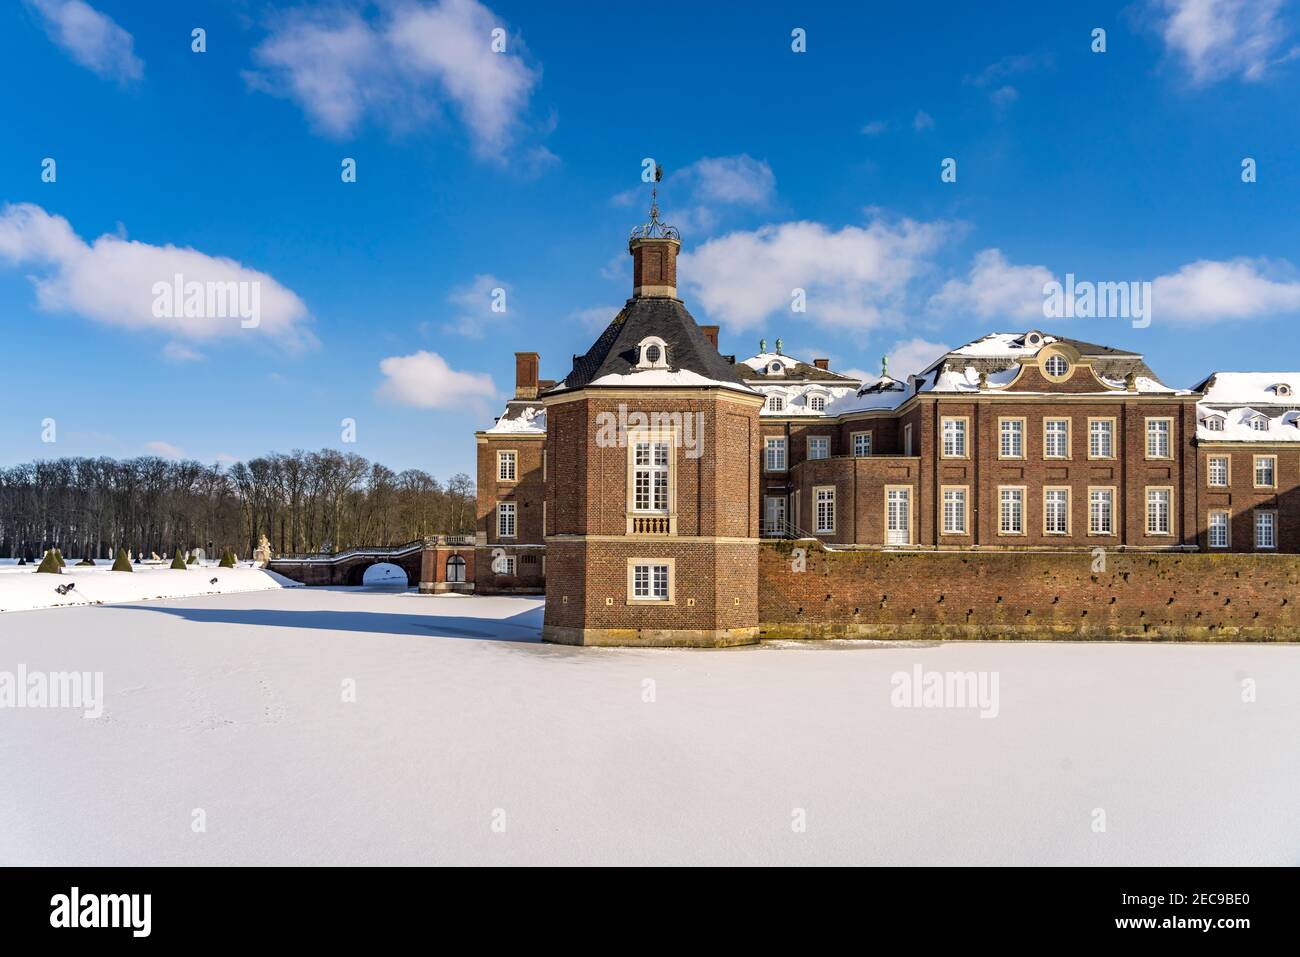 DAS verschneite Schloss Nordkirchen im Winter, Nordkirchen, Münsterland, Nordrhein-Westfalen, Deutschland, Europa | Snowy Nordkirchen Castle in Win Banque D'Images